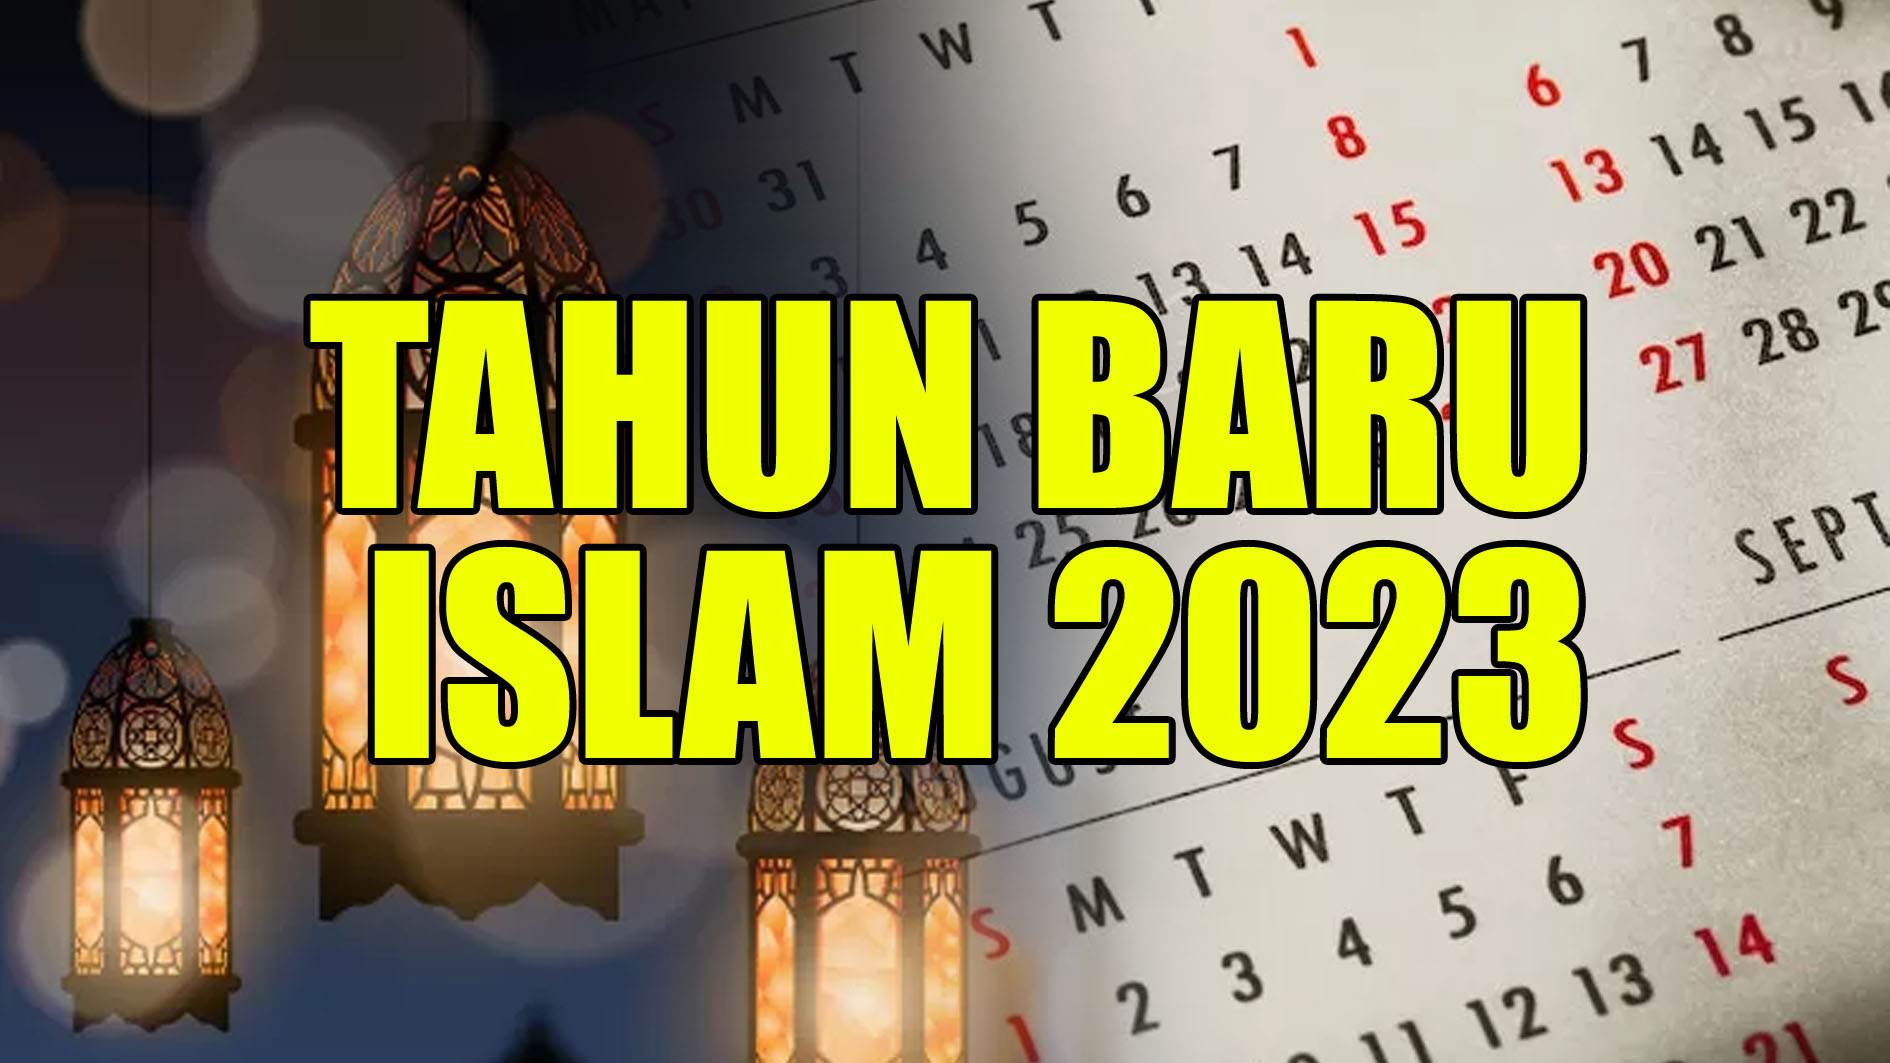 Adakah Cuti Bersama di Tahun Baru Islam 2023? Cek Informasinya di Sini